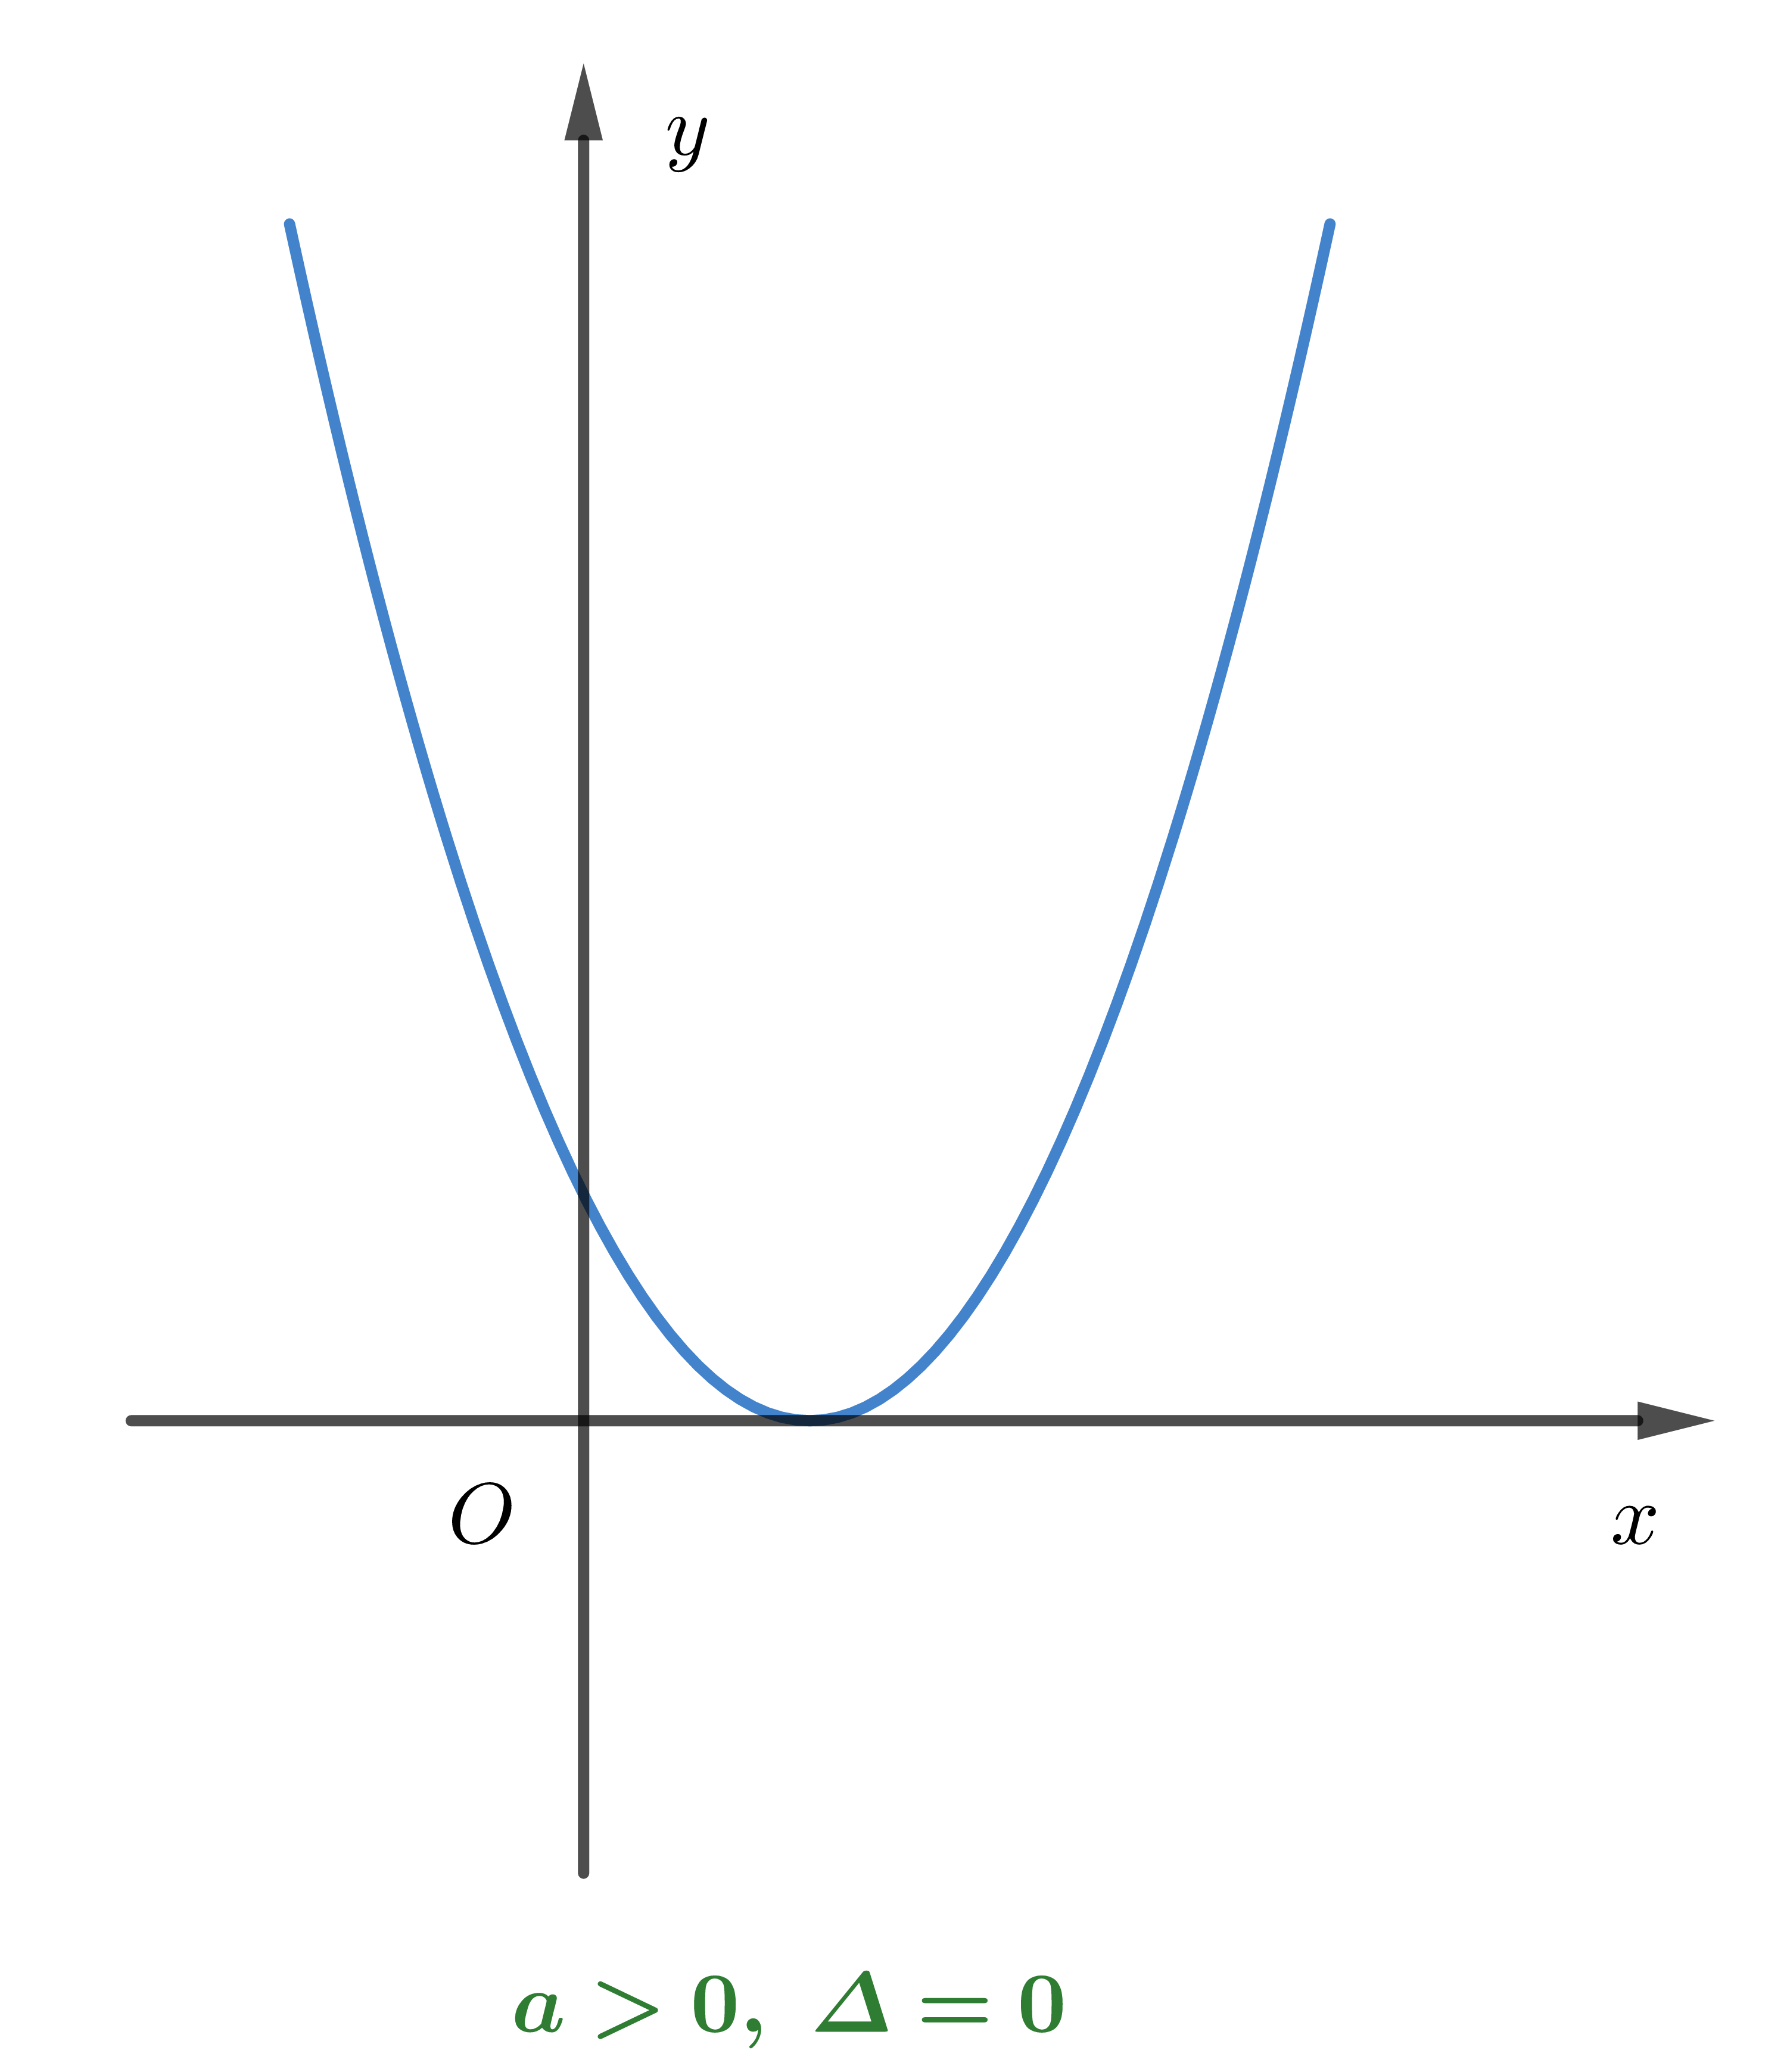 Vẽ đồ thị hàm số bậc 2 là hoạt động tuyệt vời để nắm bắt tường tận về phương trình hàm số bậc